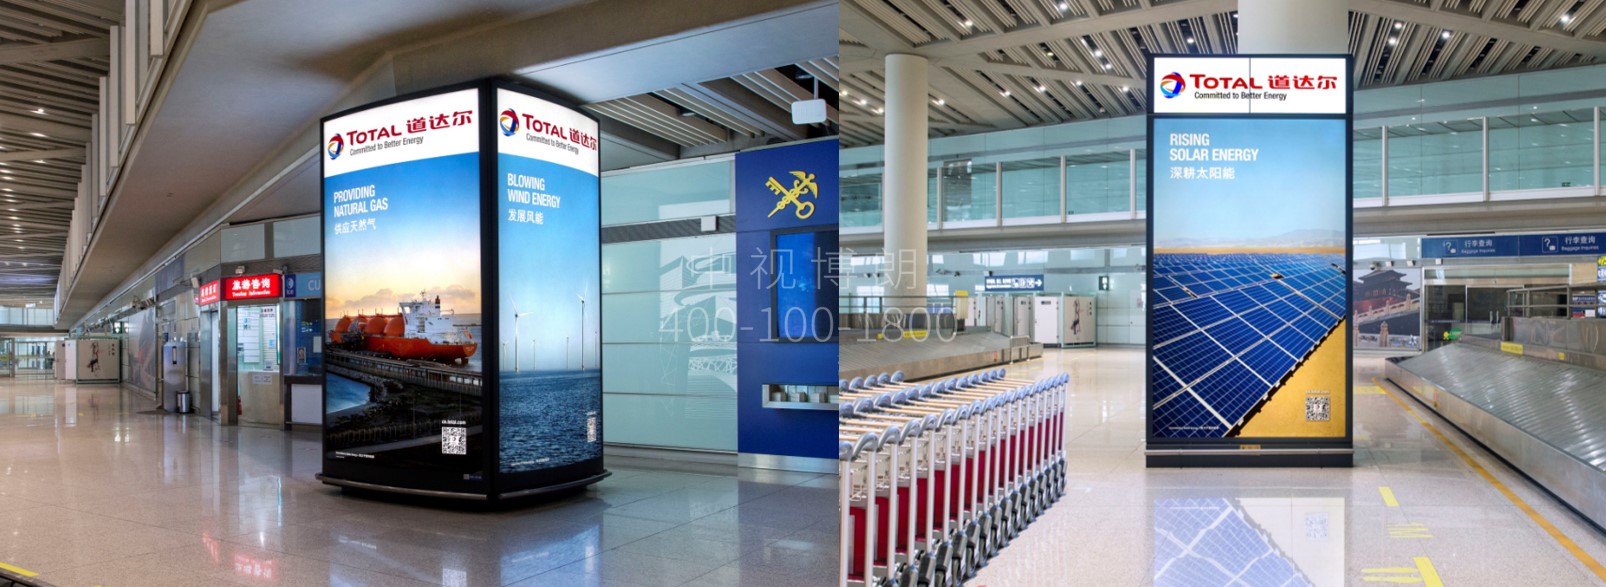 北京首都机场广告-T3 Arrival Luggage Hall LCD Screen&Light Box Set